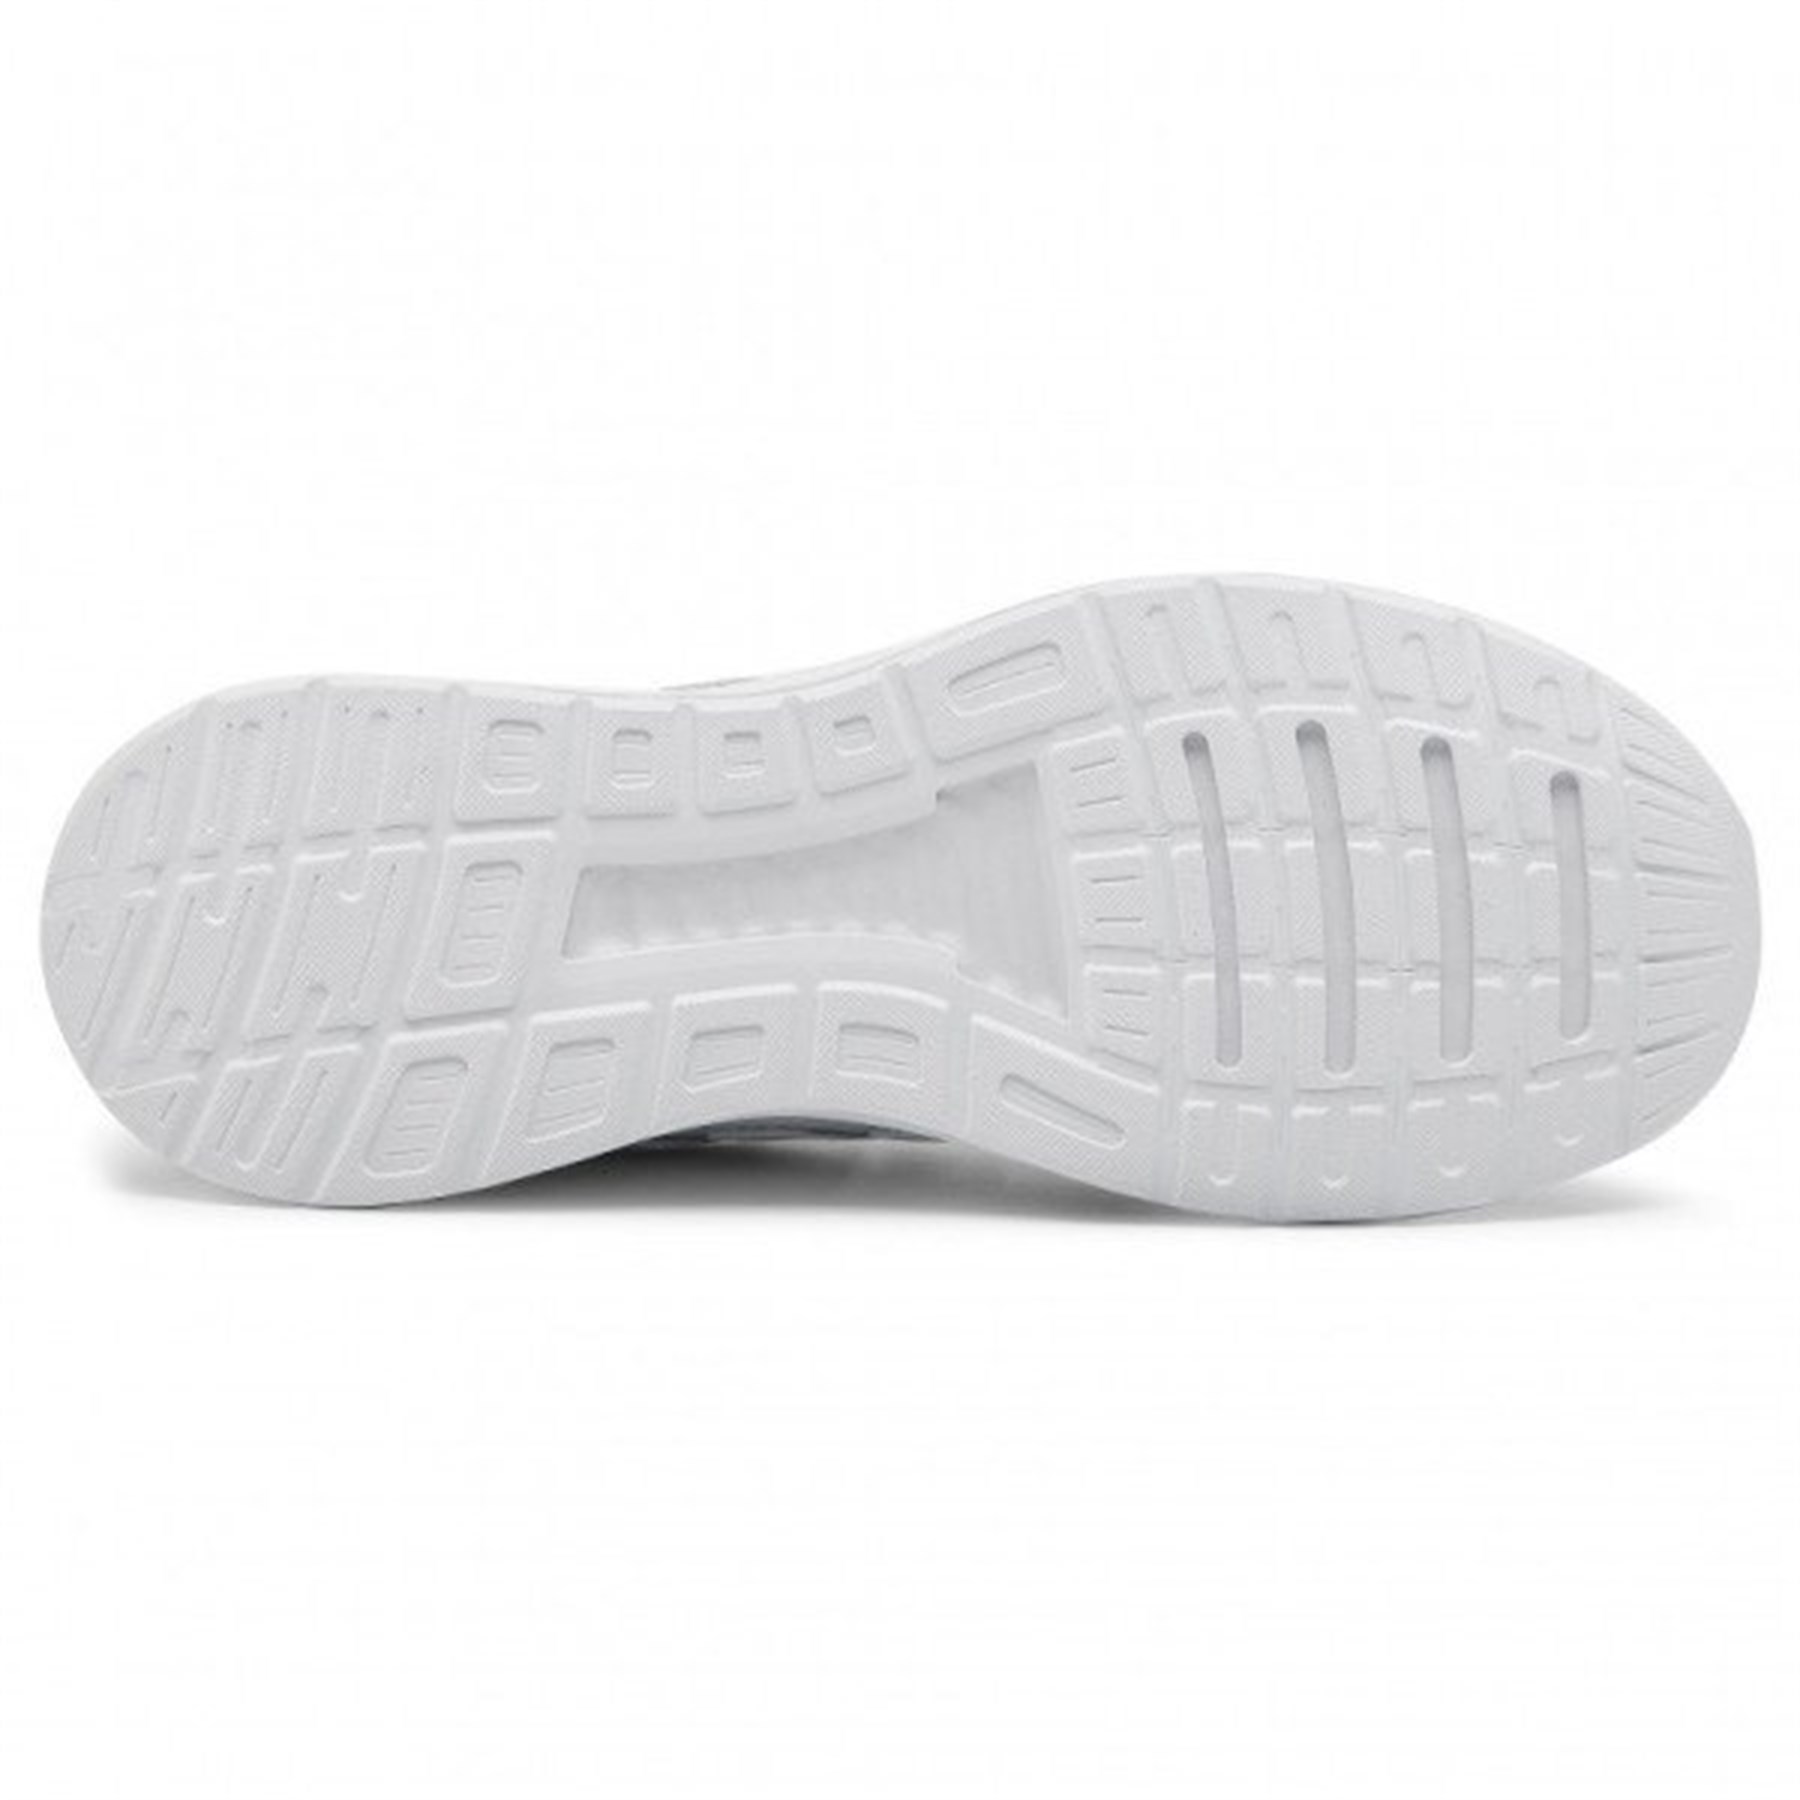 Adidas Erkek Koşu - Yürüyüş Spor Ayakkabı G28971 Runfalcon